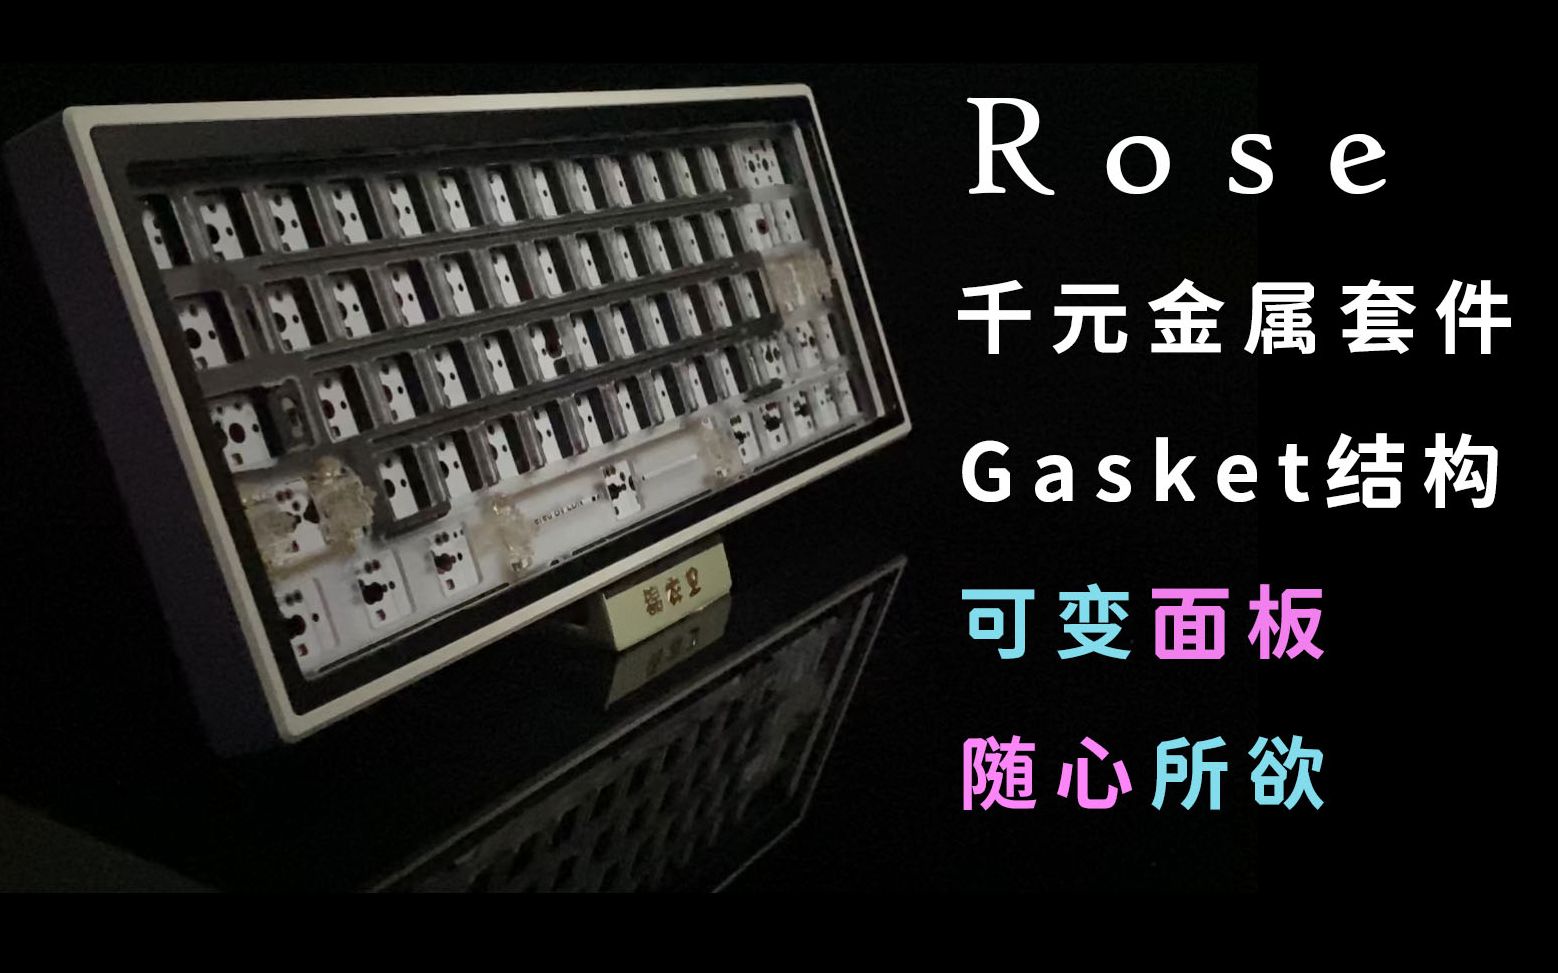 [一把更比三把强]Rose60 可变面板 高性价比千元金属gasket简评